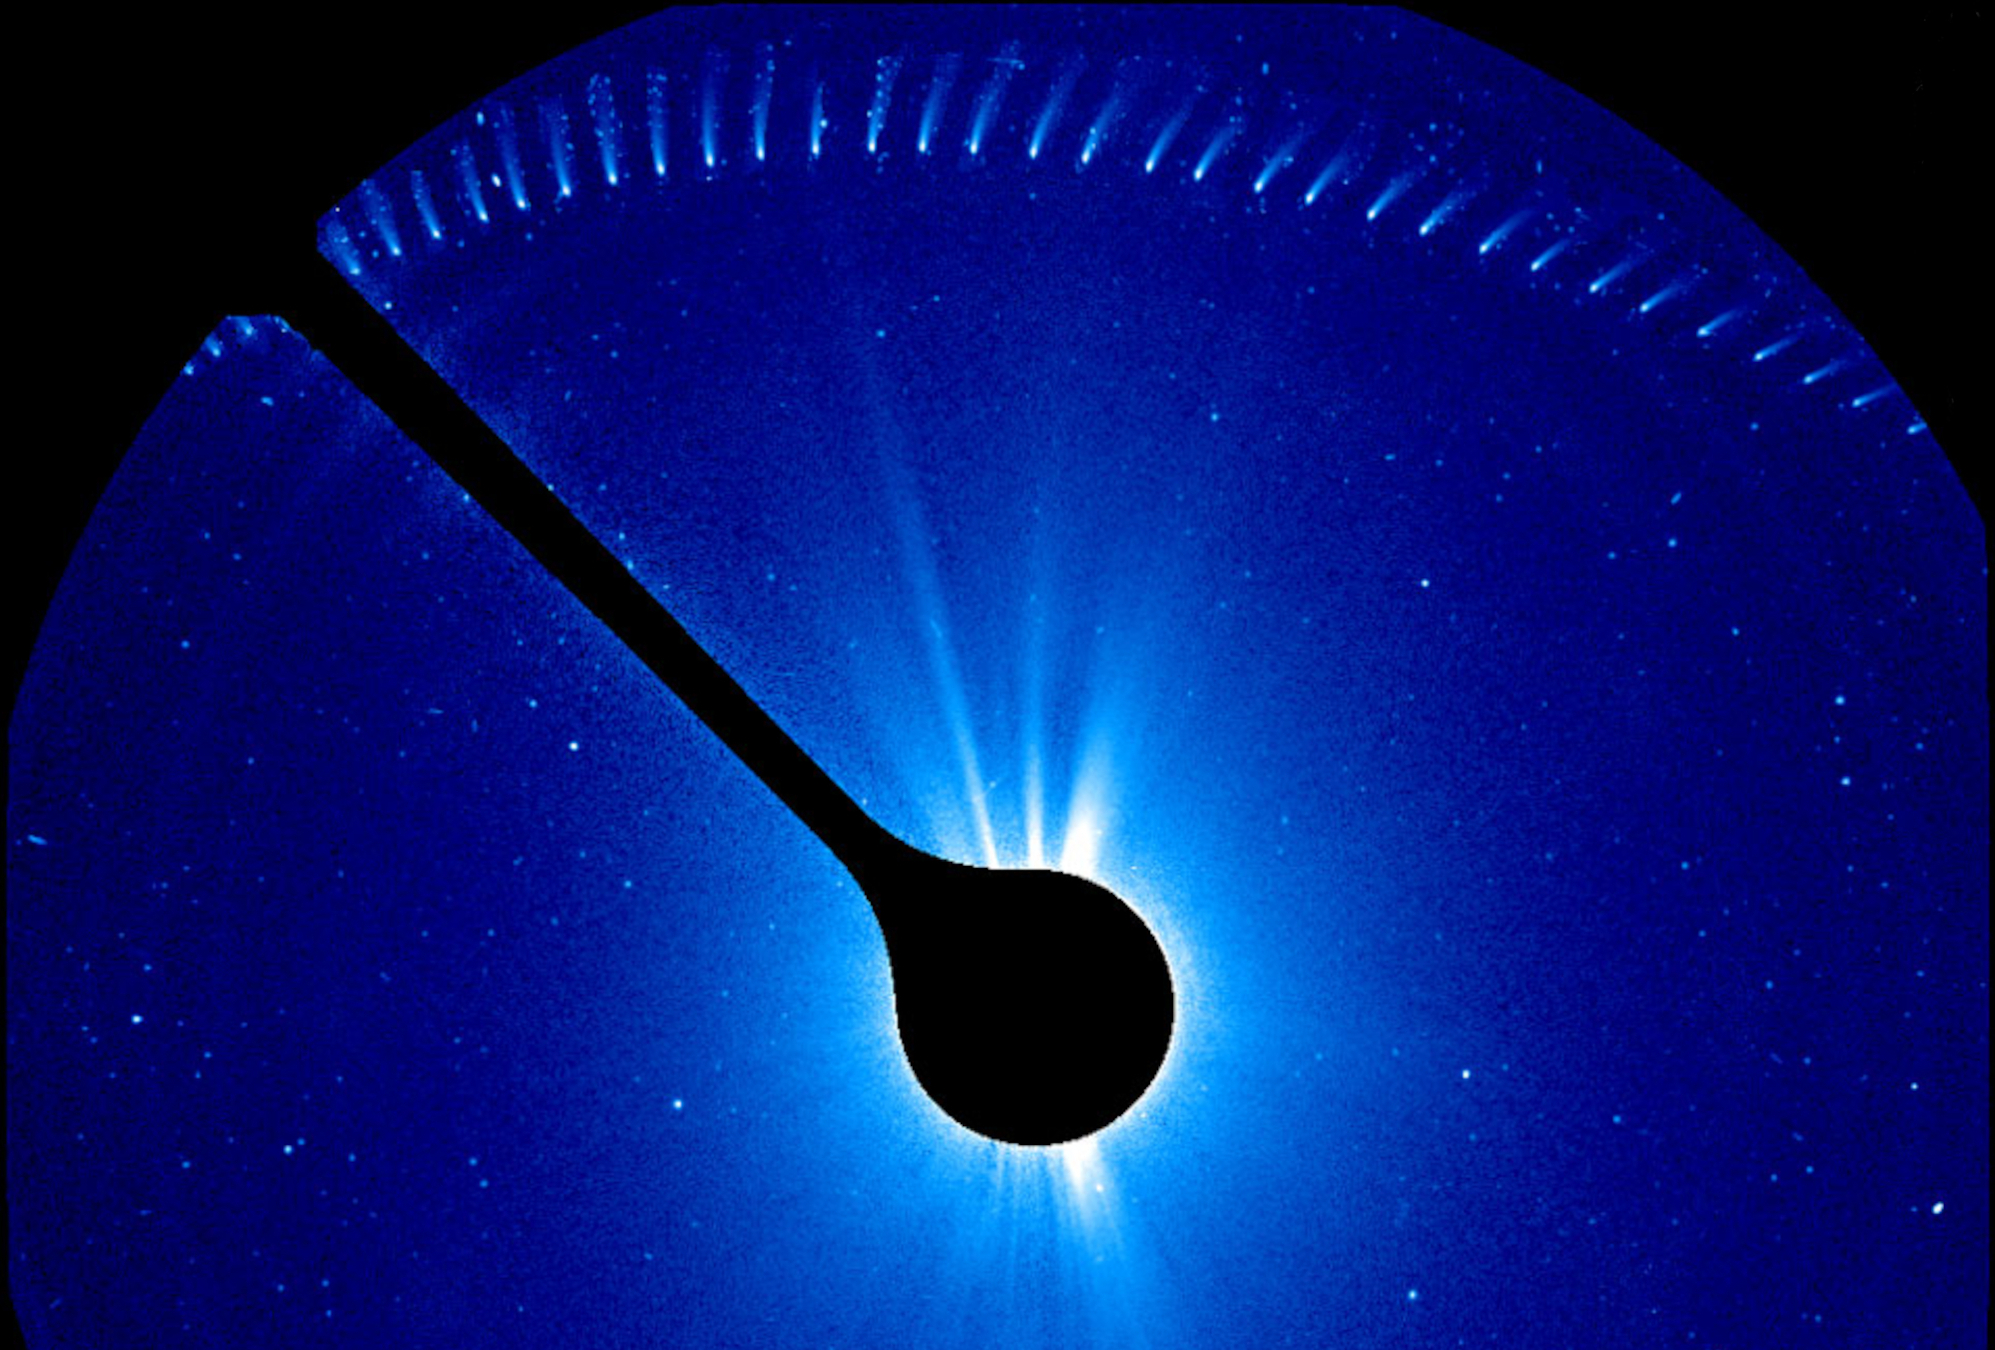 Serienaufnahme des Komete 96P/Machholz beim Vorbeiflug an der Sonne